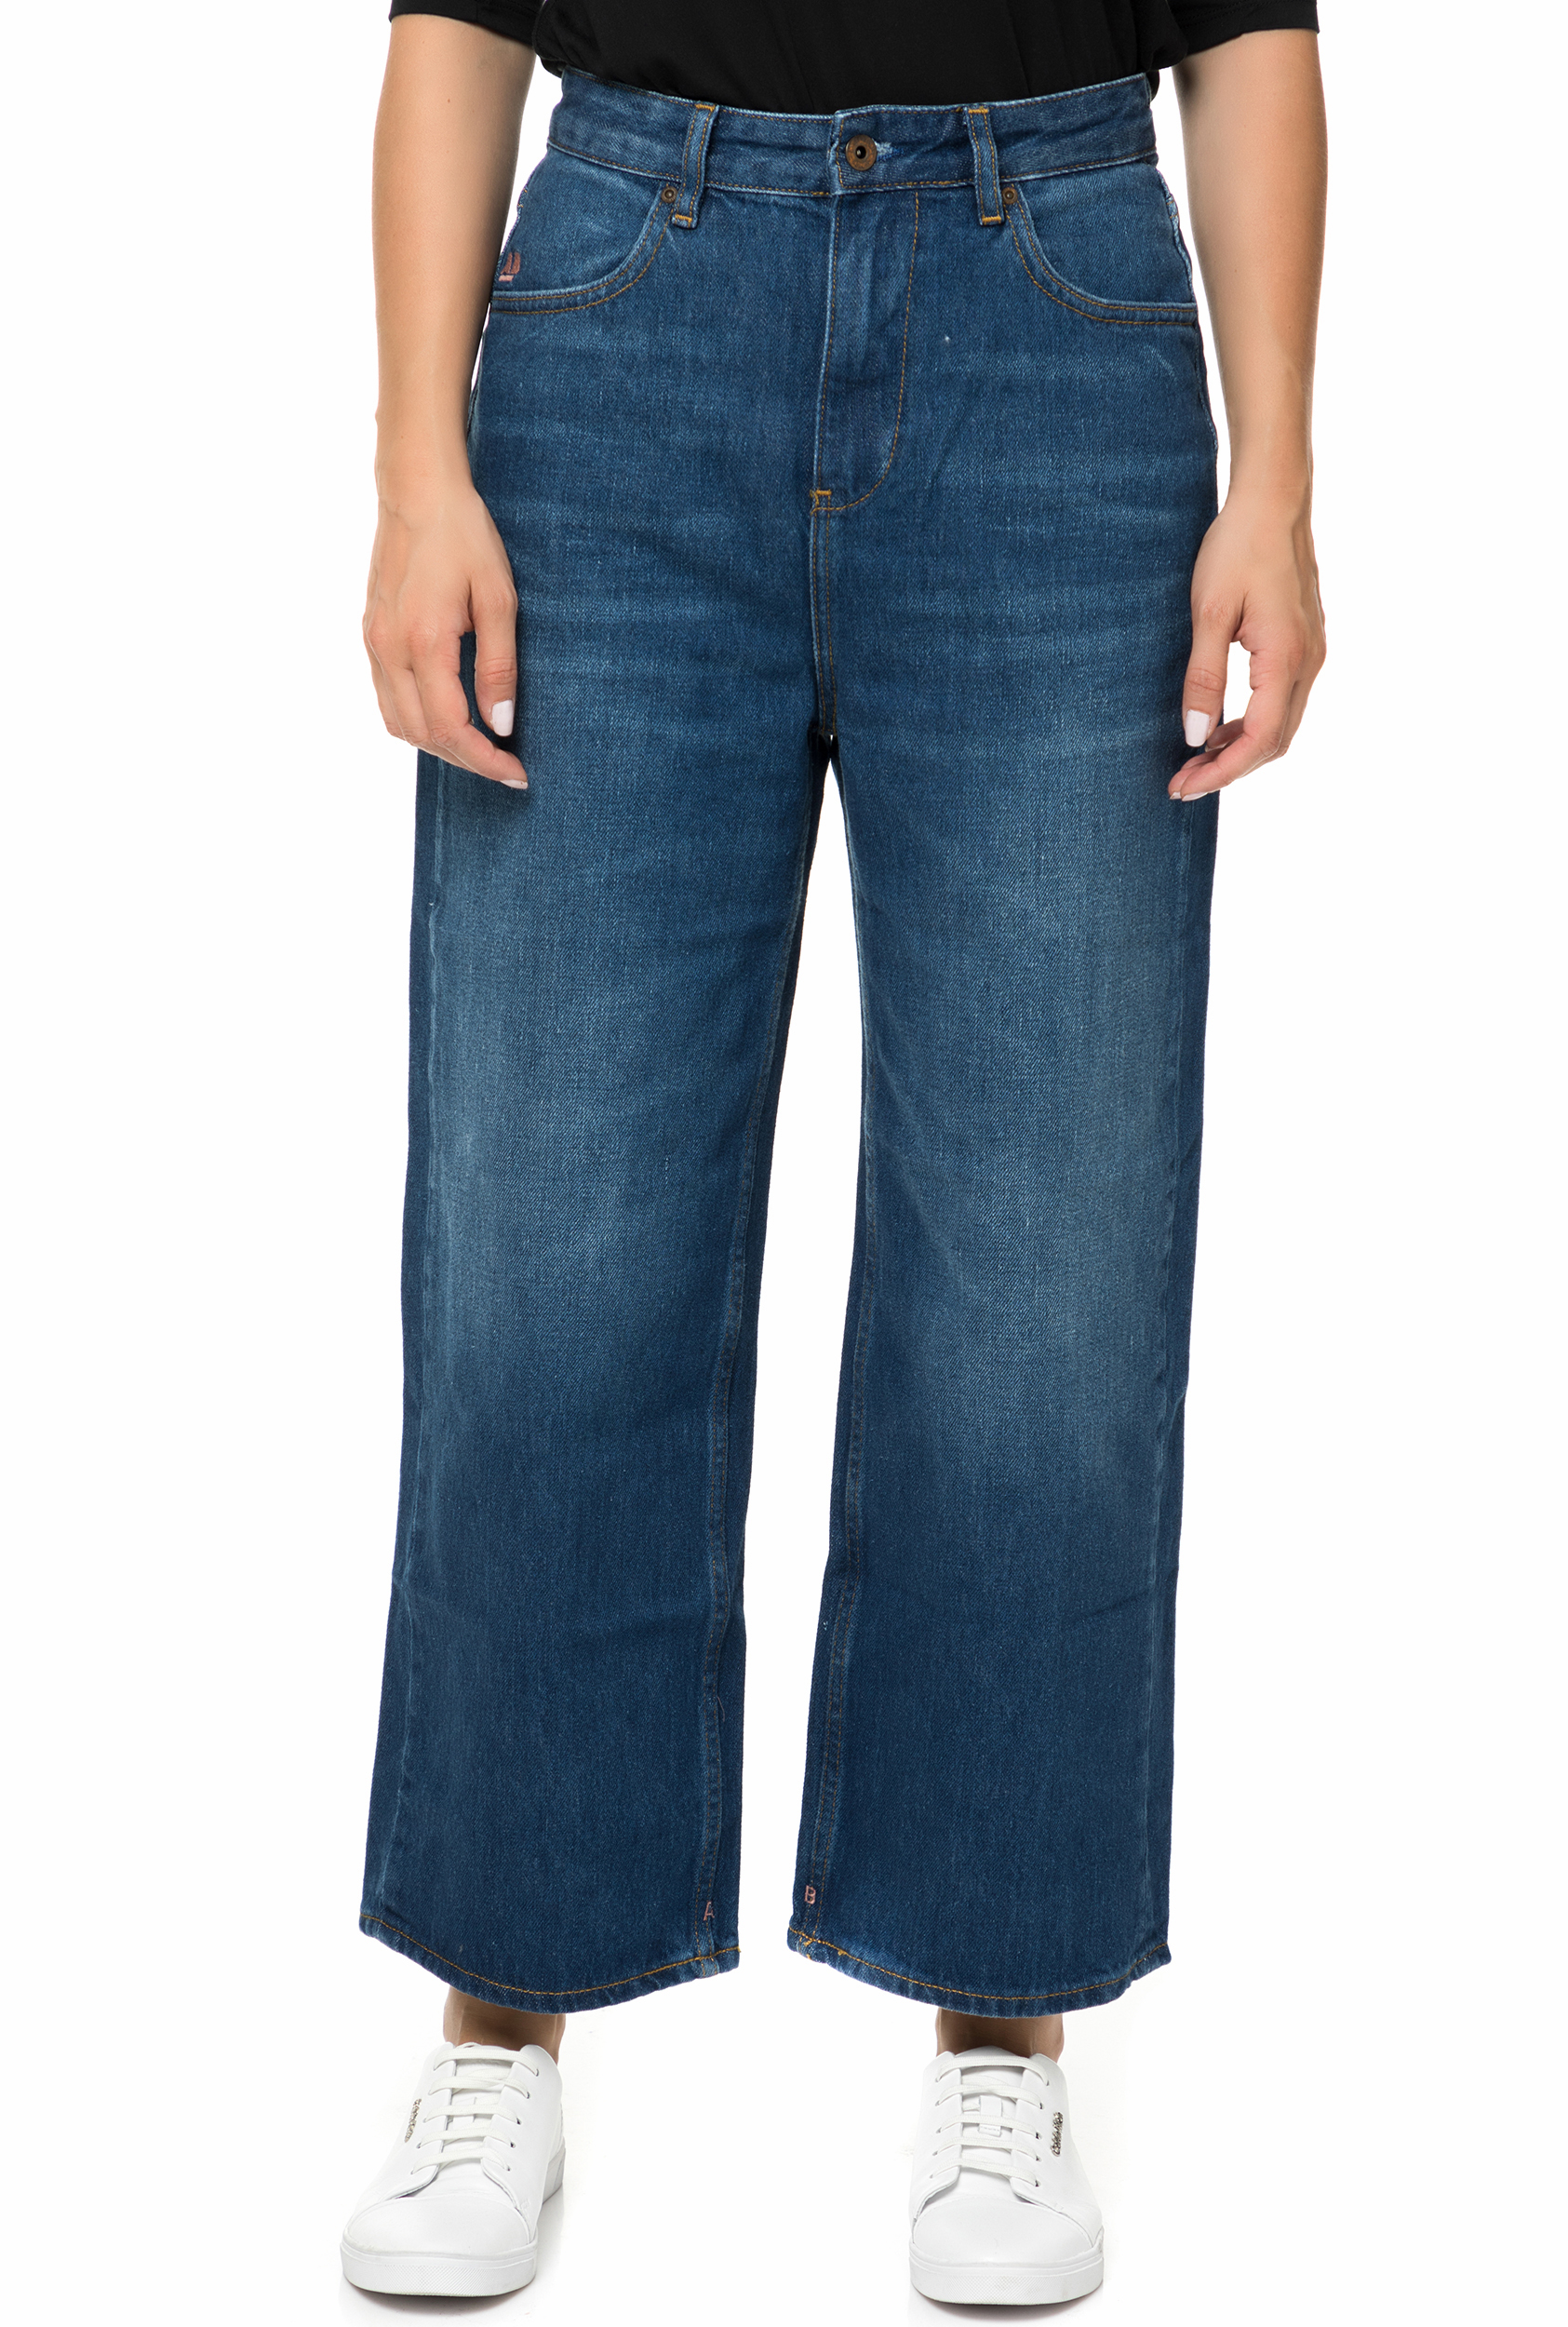 Γυναικεία/Ρούχα/Παντελόνια/Cropped SCOTCH & SODA - Γυναικεία τζιν ψηλόμεση crop παντελόνα SCOTCH & SODA μπλε